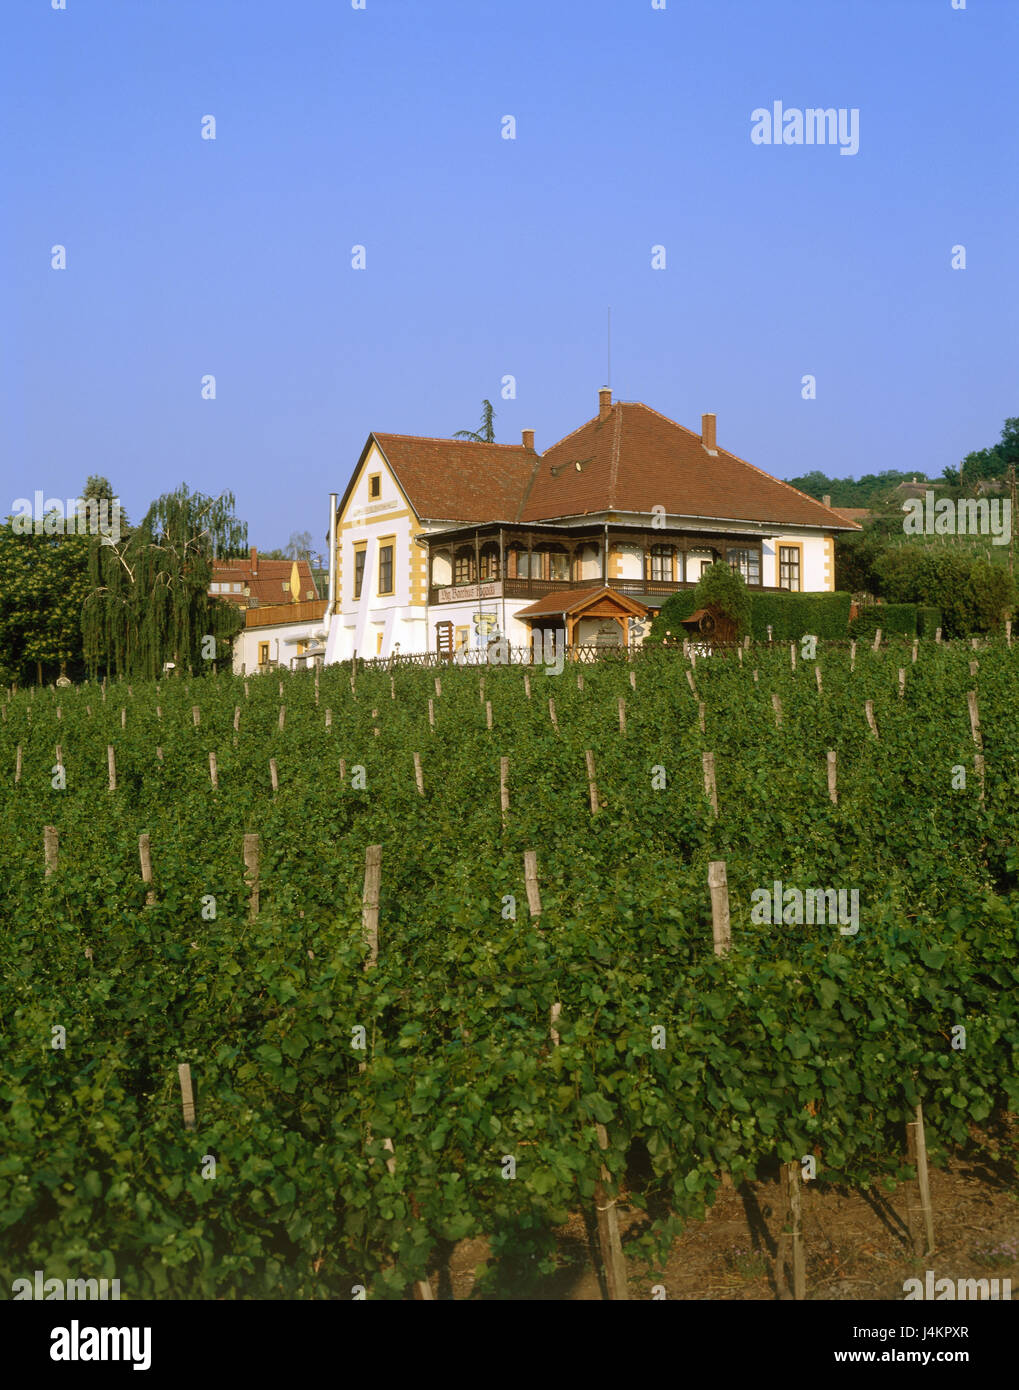 La Hongrie, la région de Veszprém Megye, près Badacsony, vignoble, Vignes, maison de l'Europe, l'économie, de la viticulture, vignoble, vignes, bâtiments, bonne maison, maison d'habitation, la propriété, la possession, la production, le vin Banque D'Images